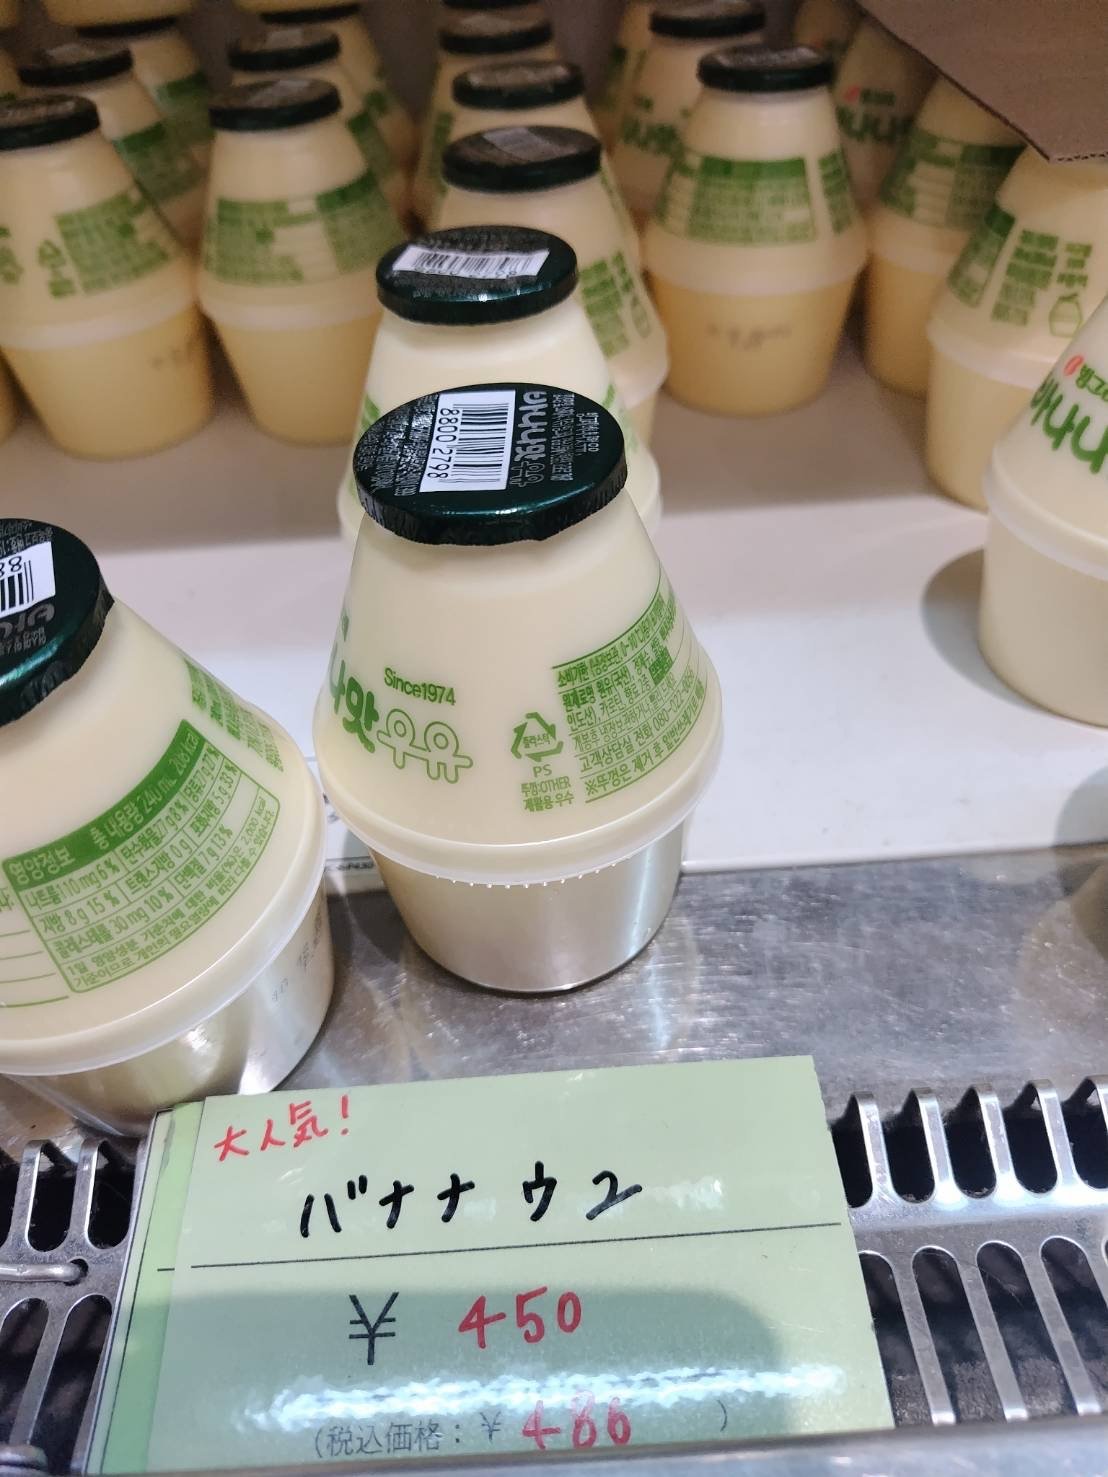 일본의 바나나우유의 미친가격